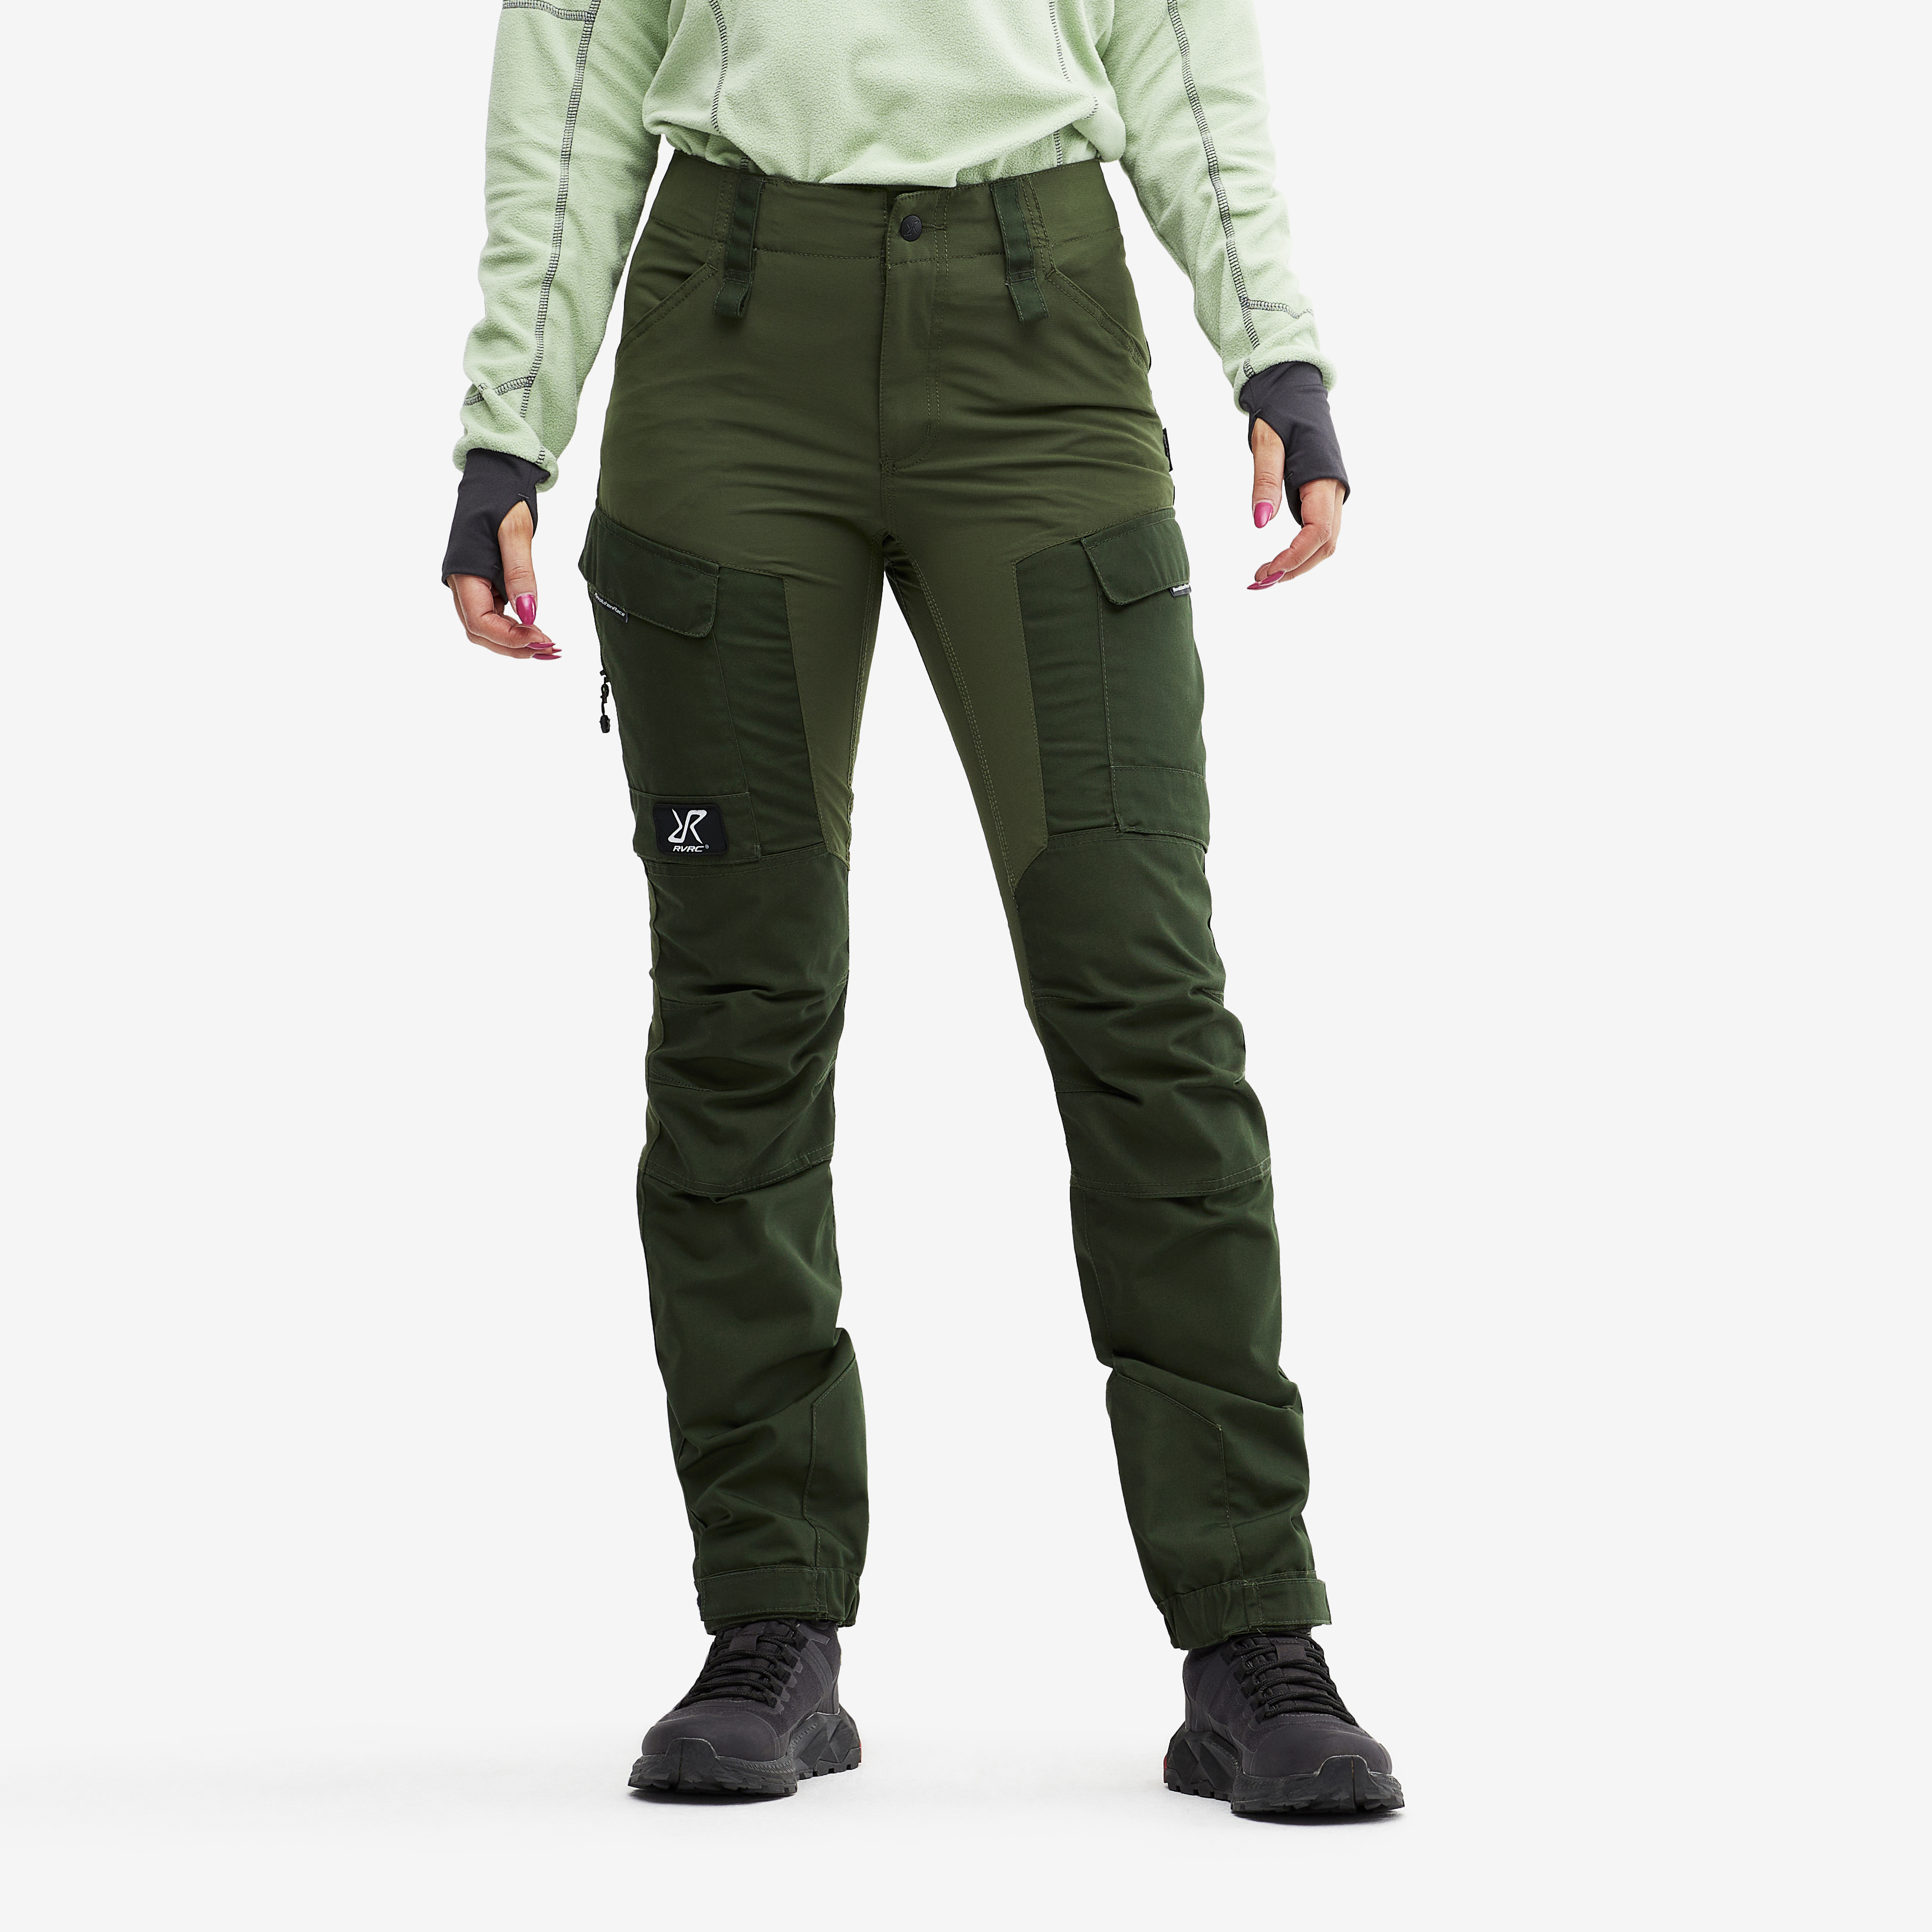 RVRC GP outdoor pants for women in green